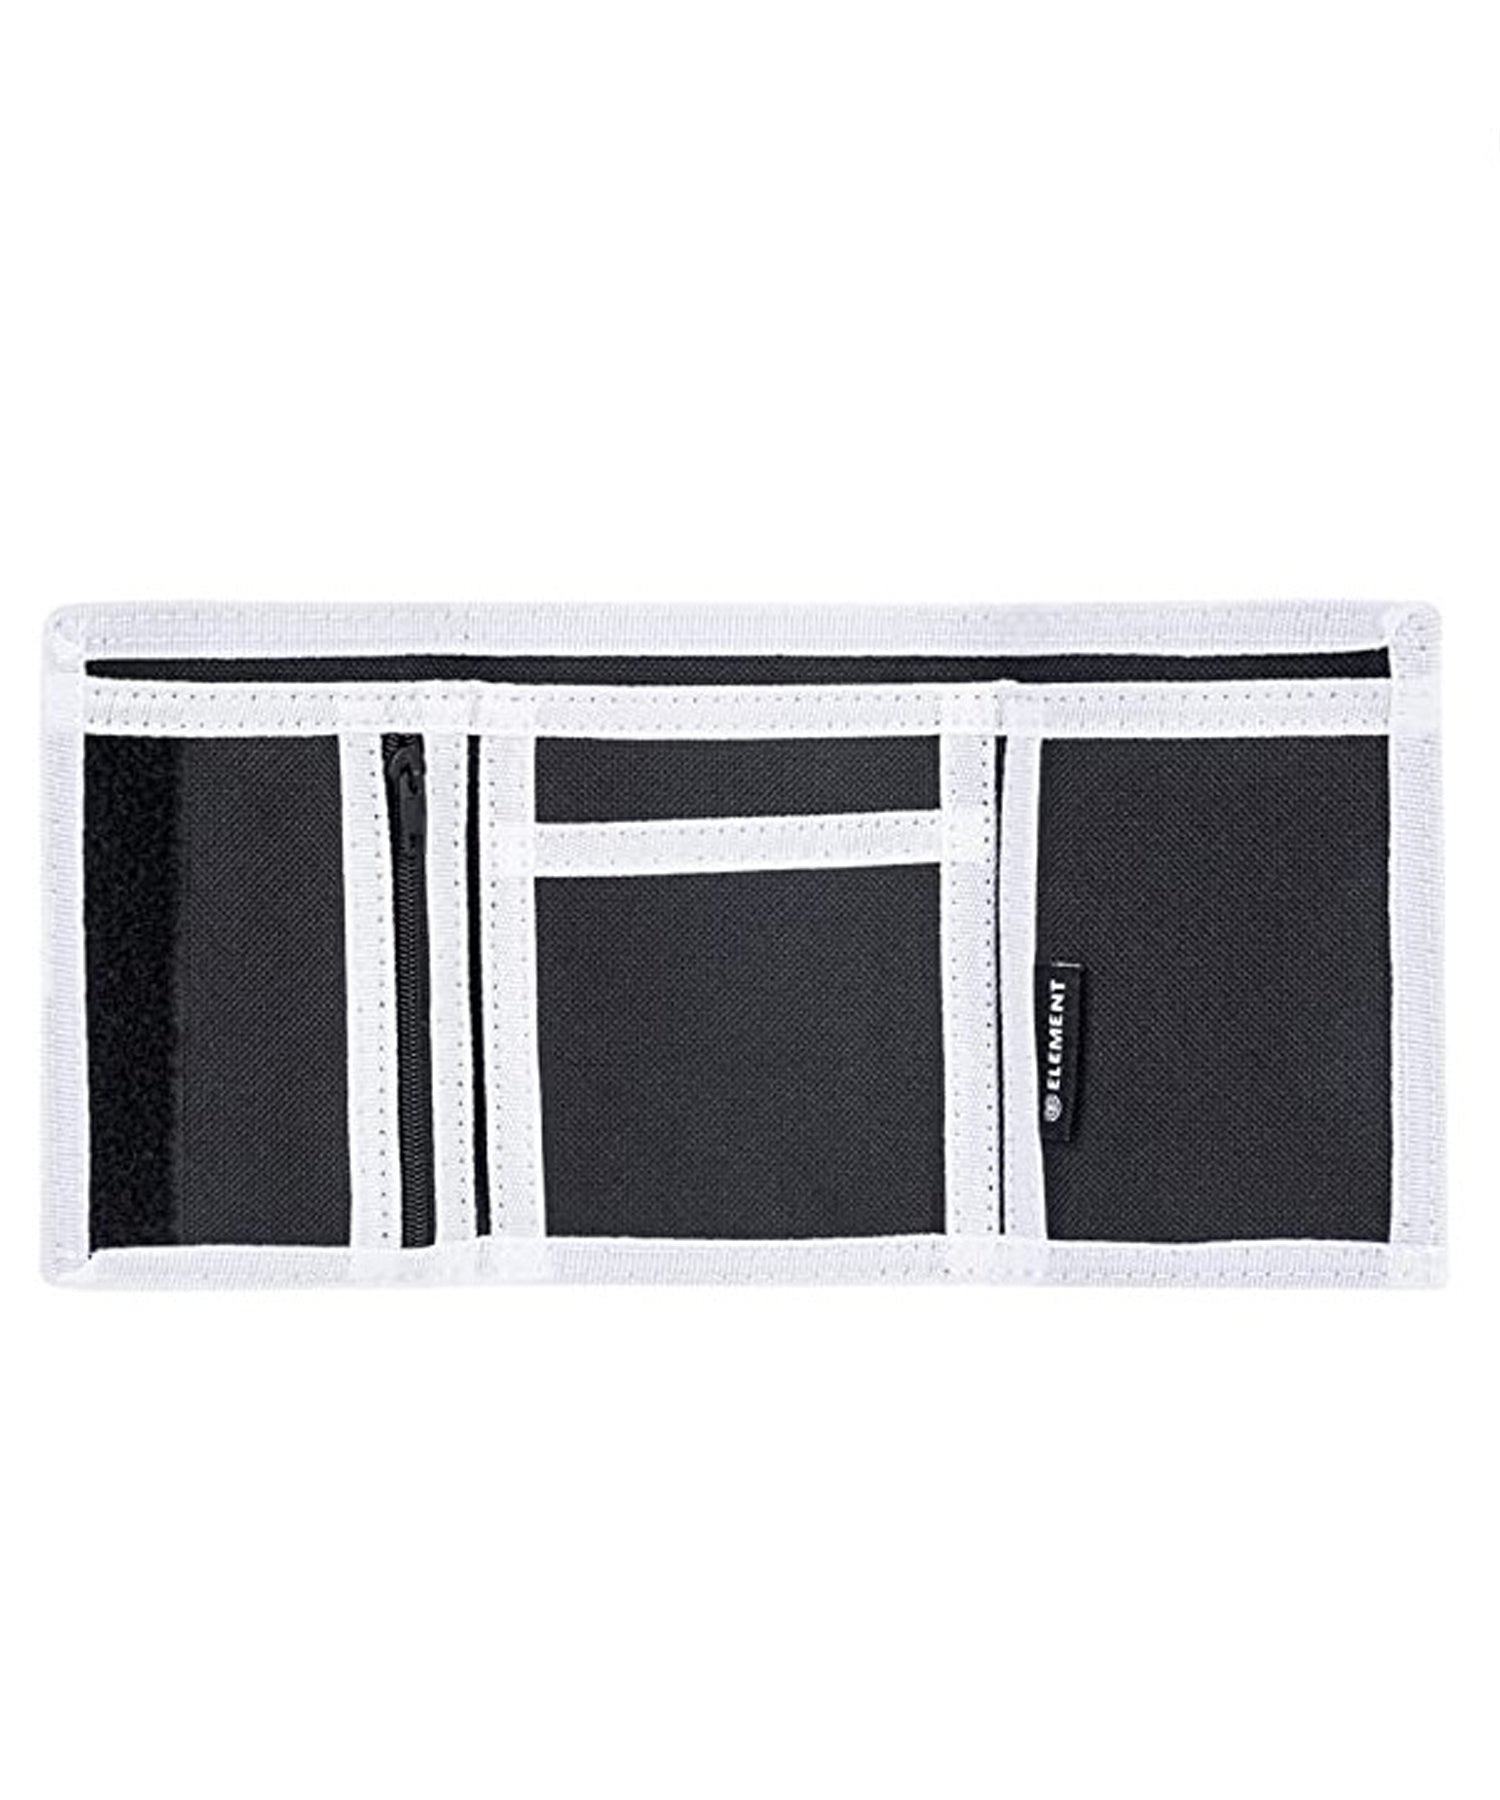 element-cartera tri-fold-army-billetera de tres hojas color army-loneta de poliéster-logo element en el centro.